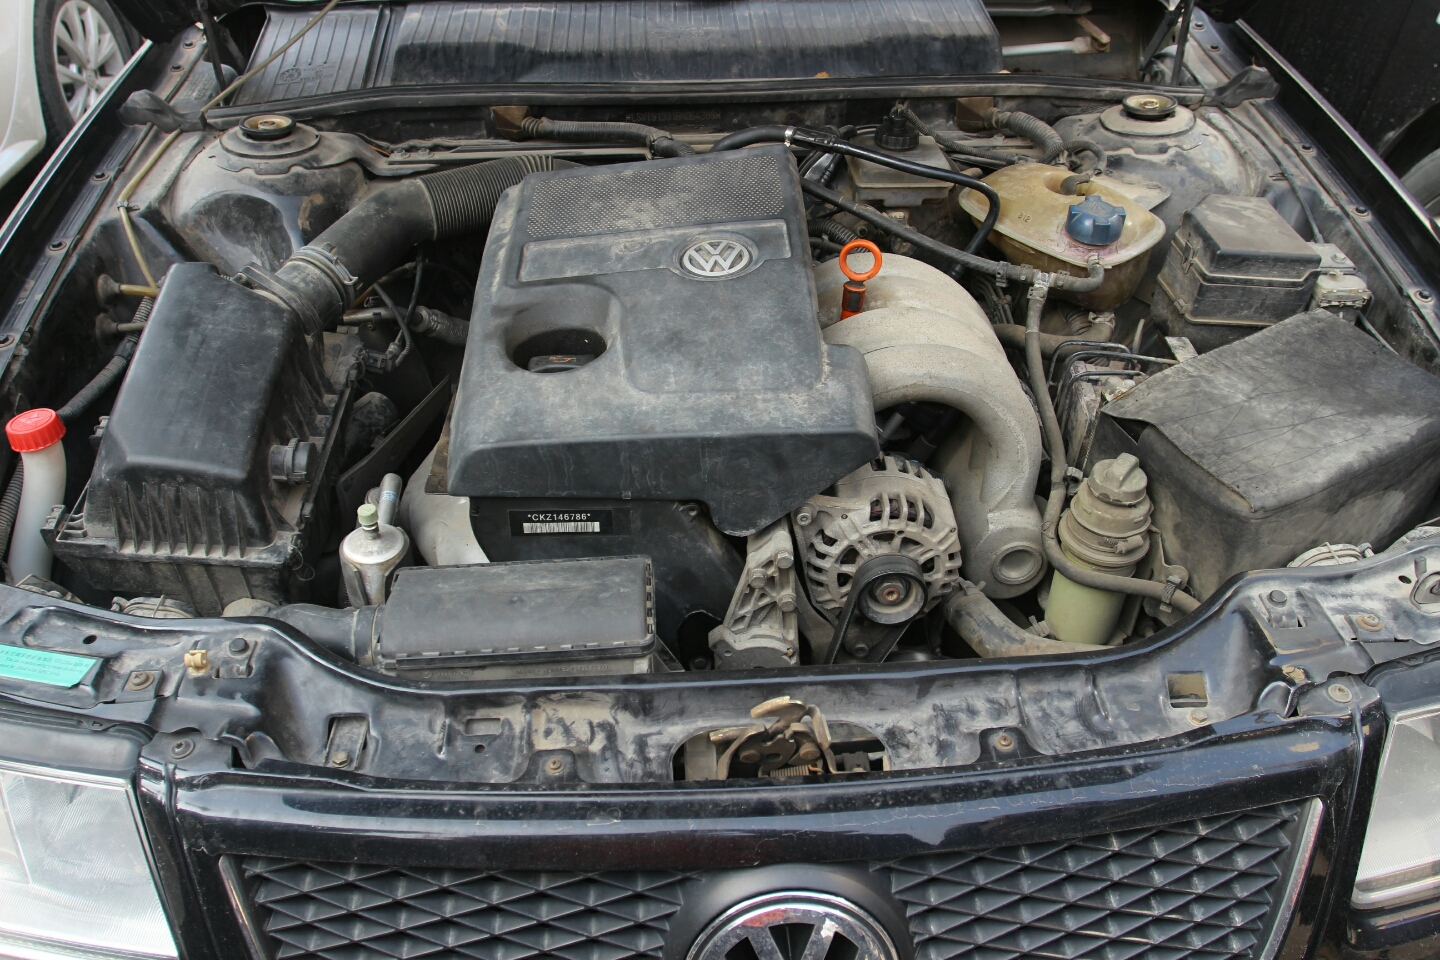 发动机底盘:发动机油液位及品质正常,油封不泄露,线路管无剥落,发动机